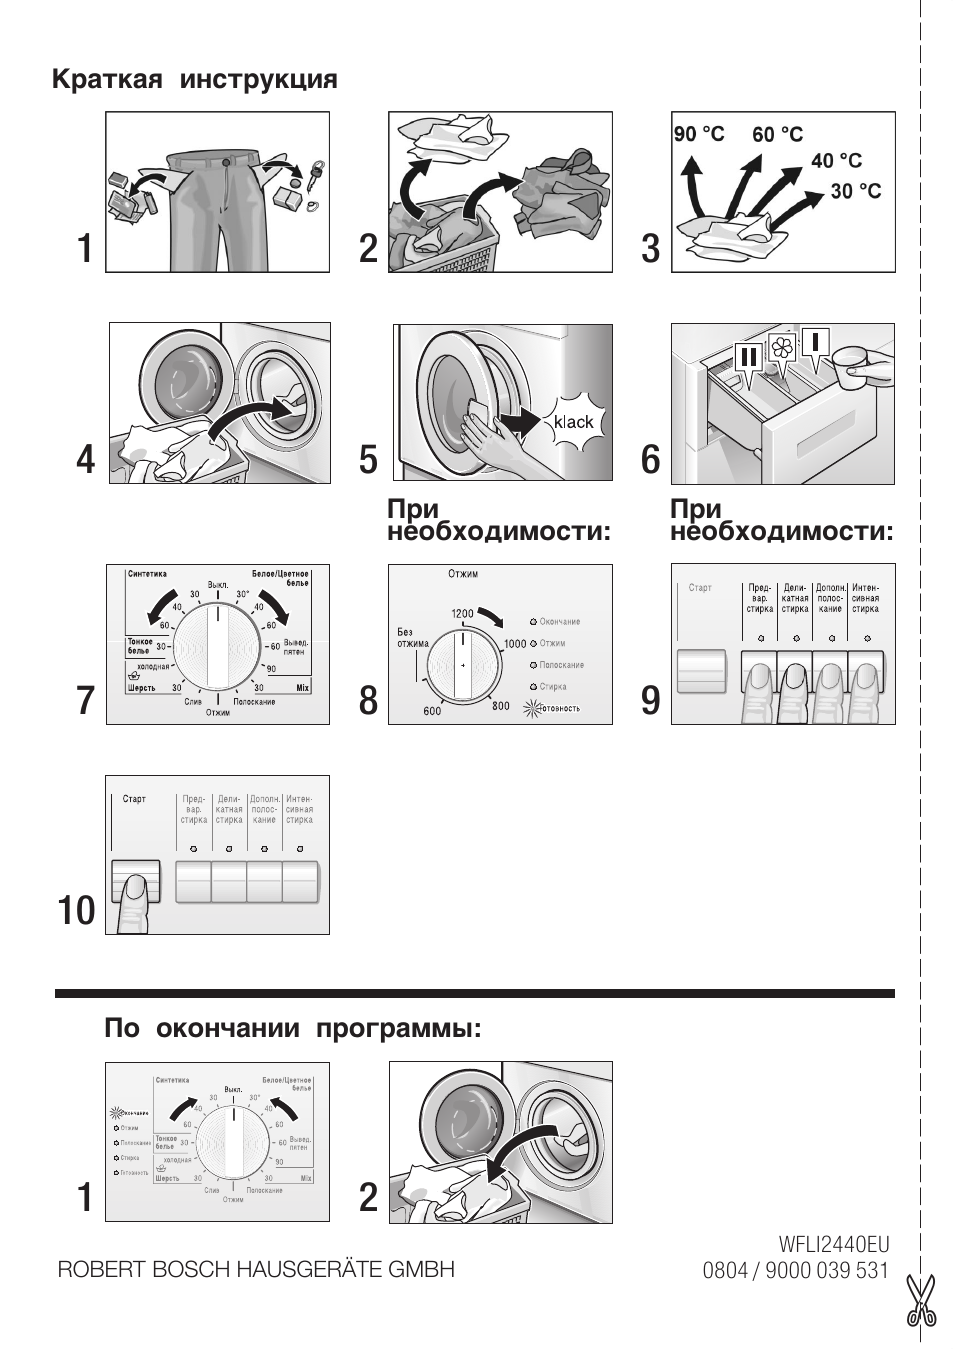 Как пользоваться стиральной машиной — описание (+автомат)